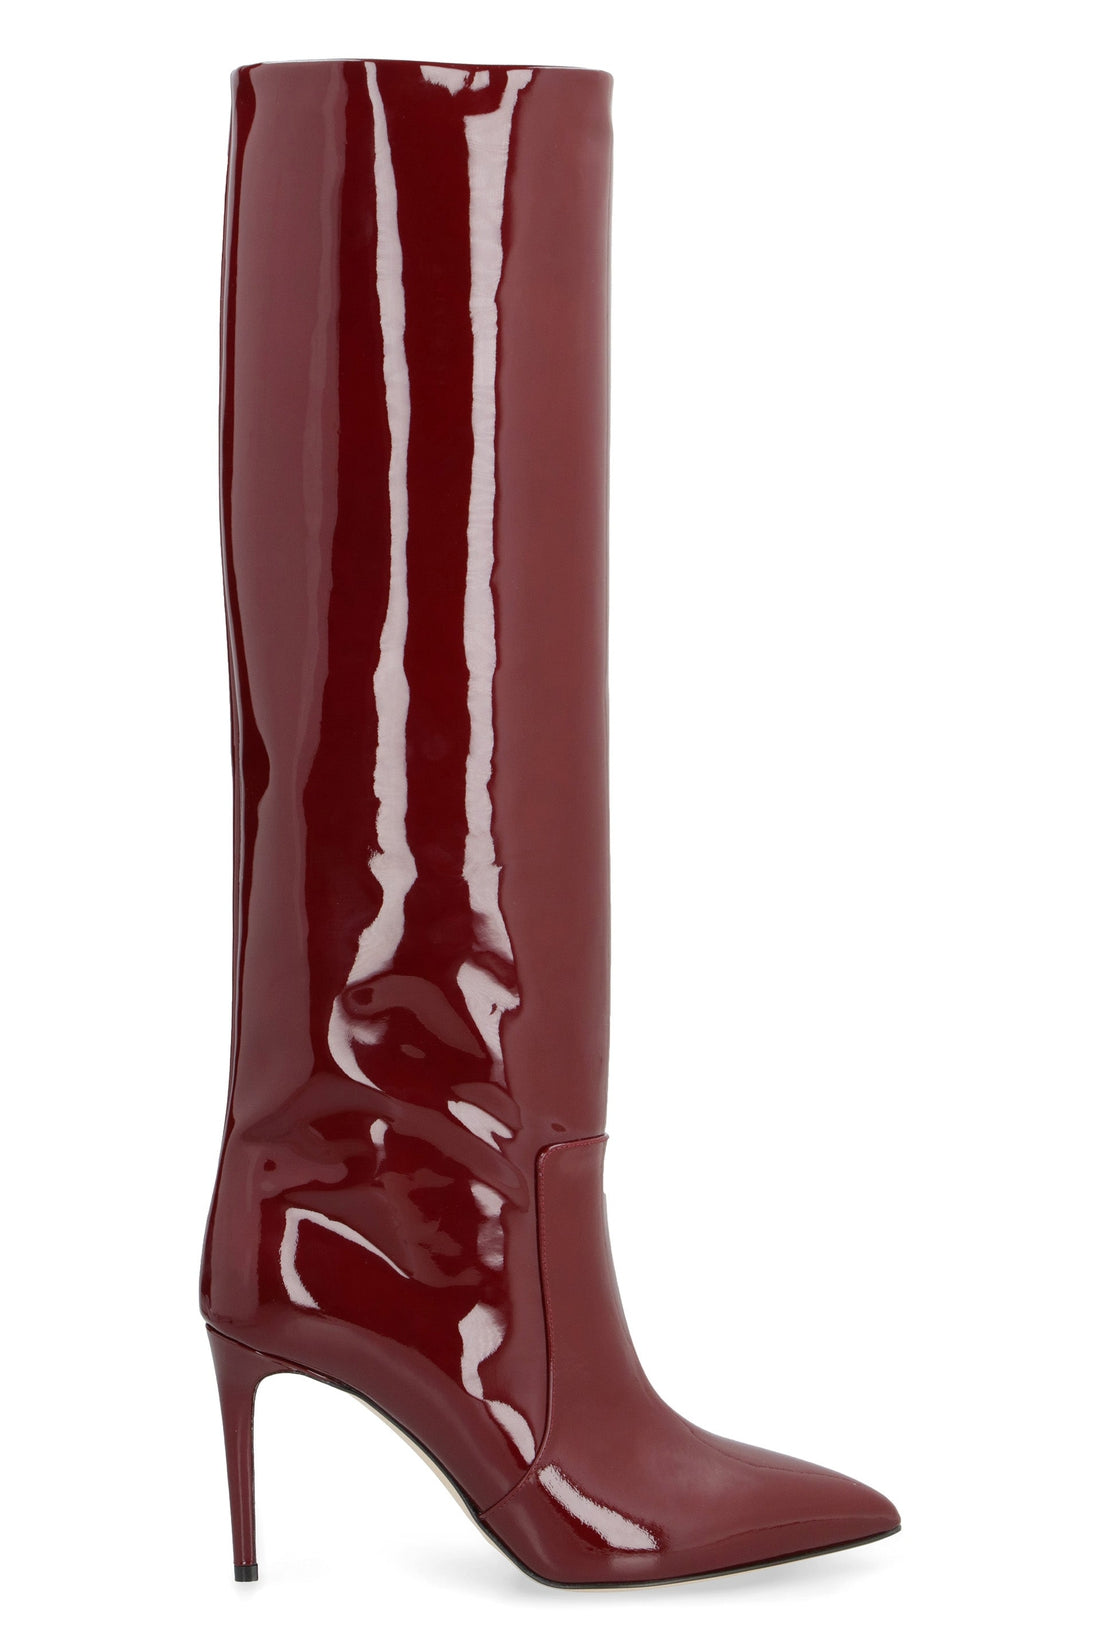 Paris Texas-OUTLET-SALE-Eva patent leather boots-ARCHIVIST